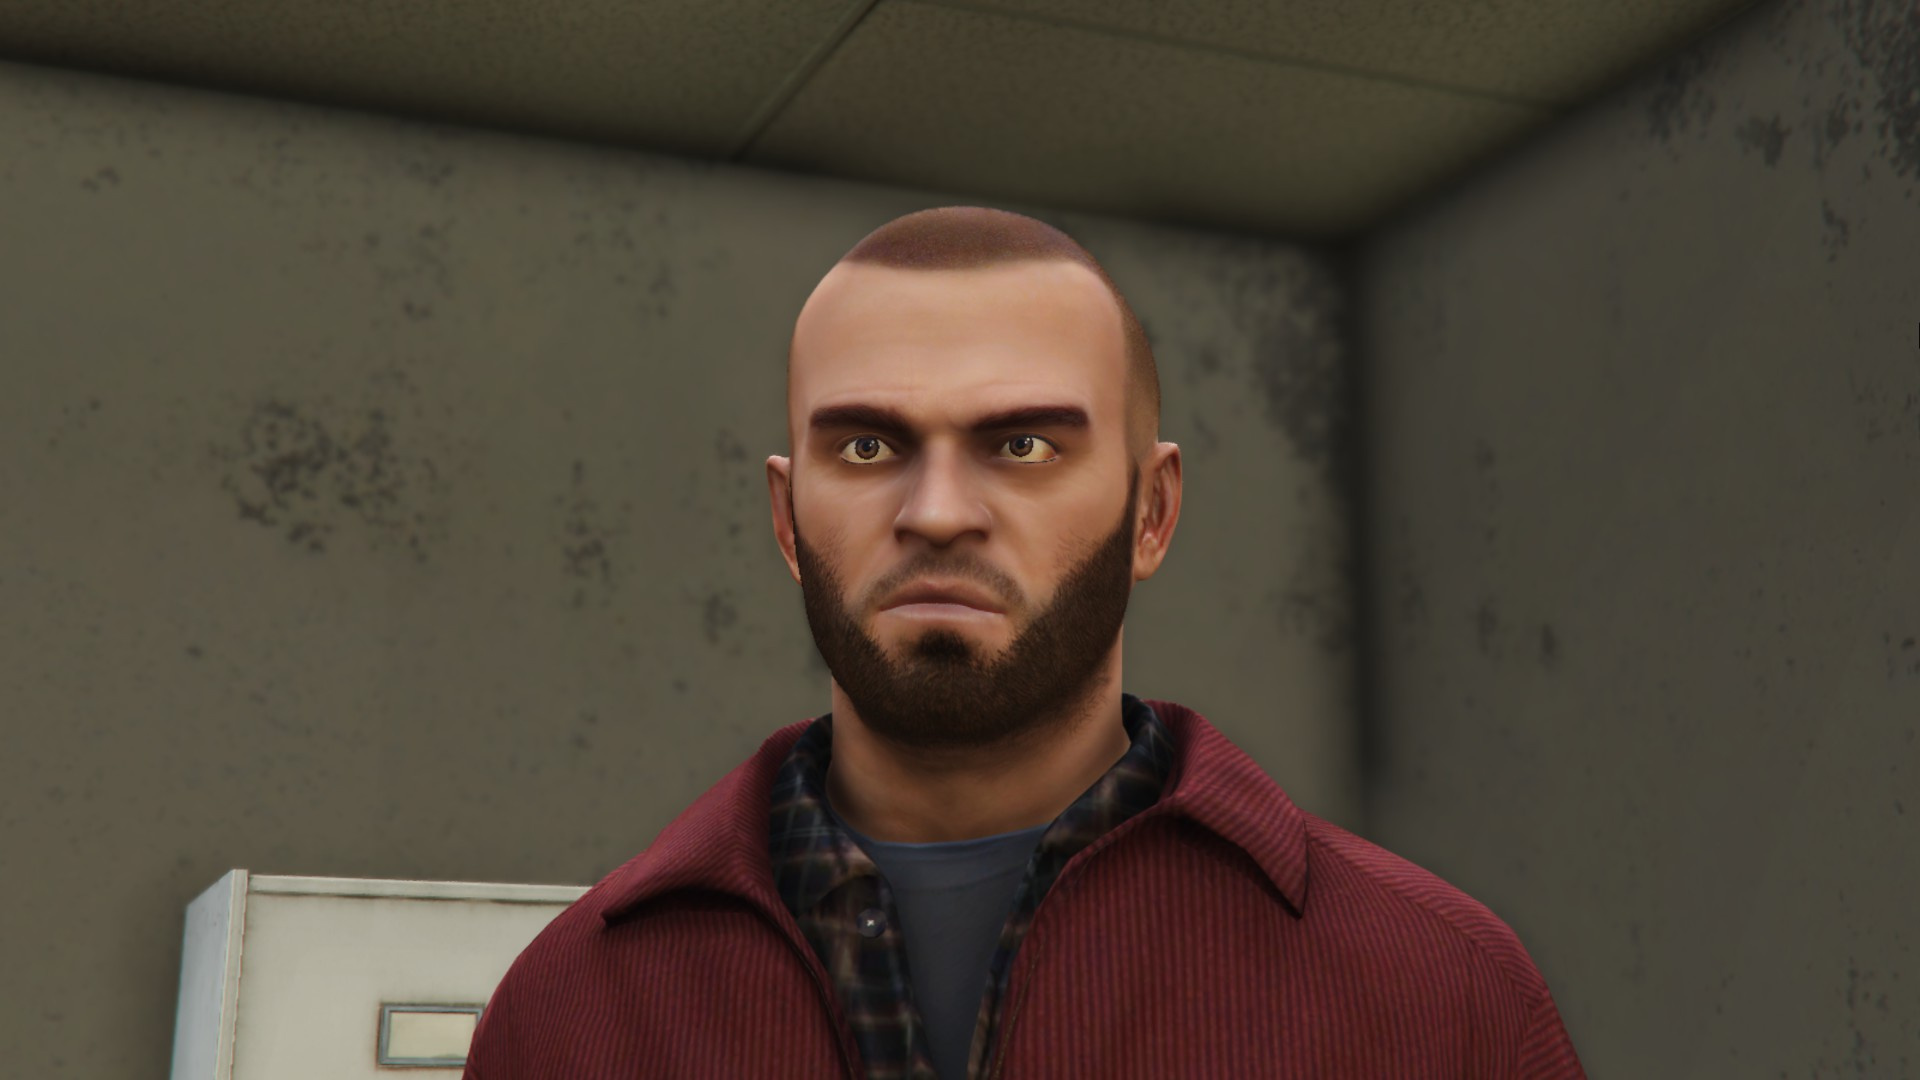 Better Trevor Phillips (Face, Beard & Hair) 